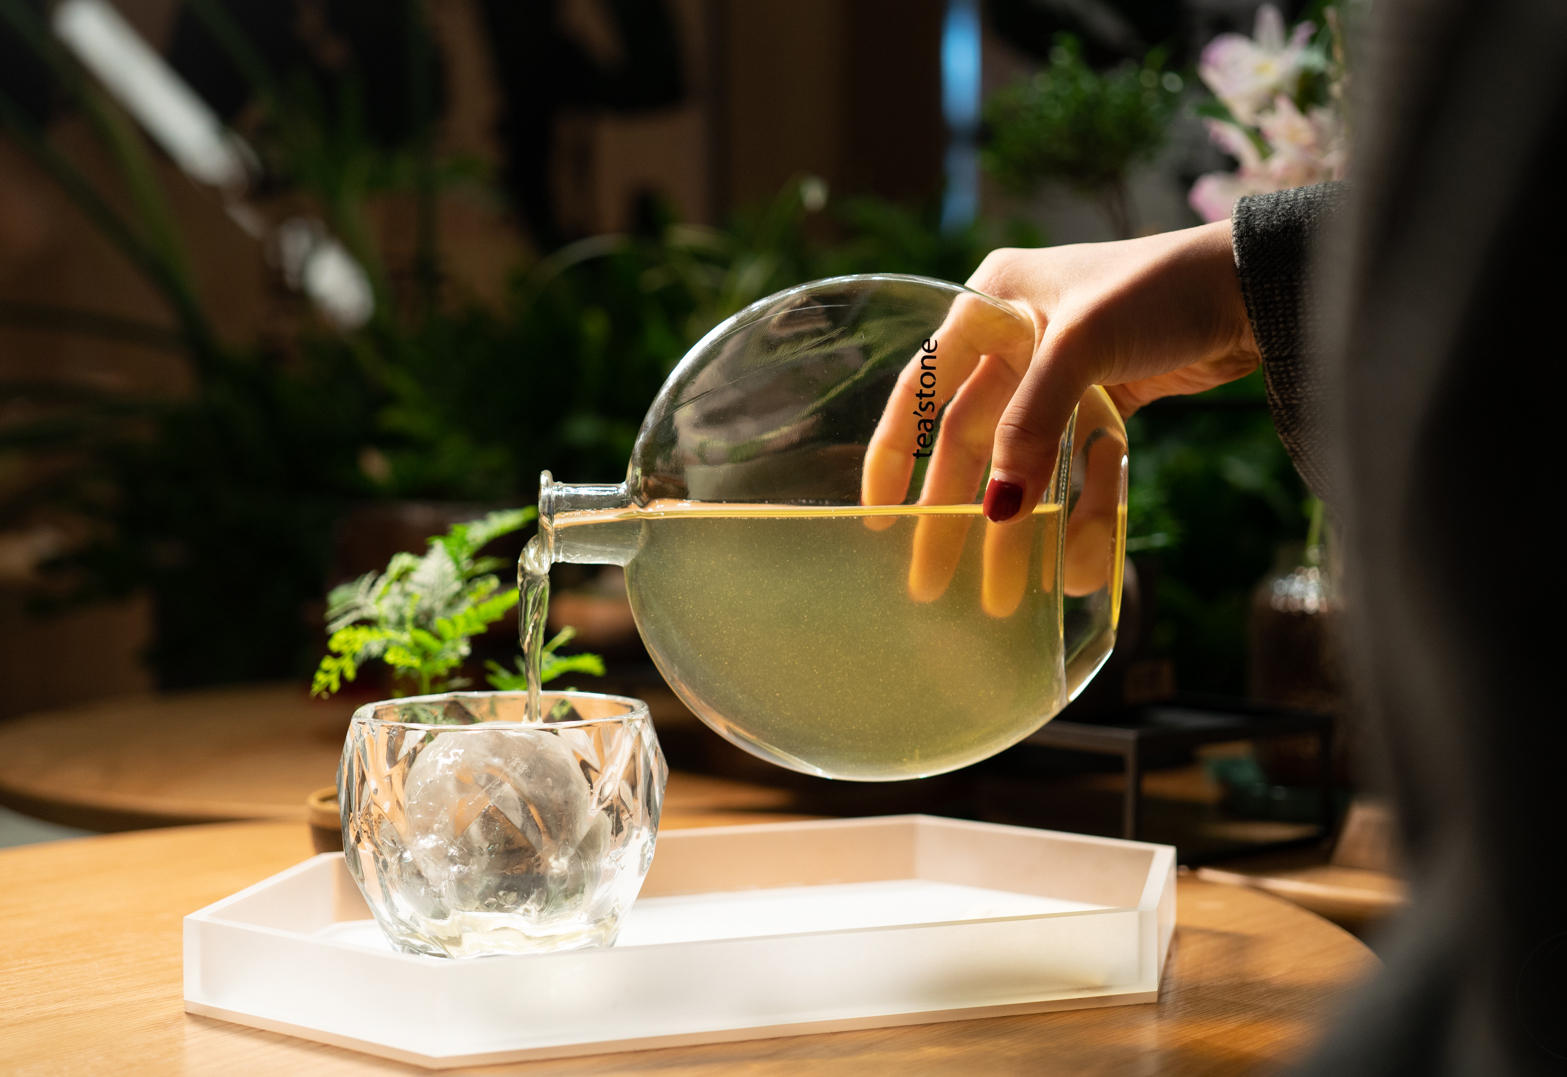 36氪首发 |「tea'stone」获数千万元天使轮投资，定位纯茶新零售品牌